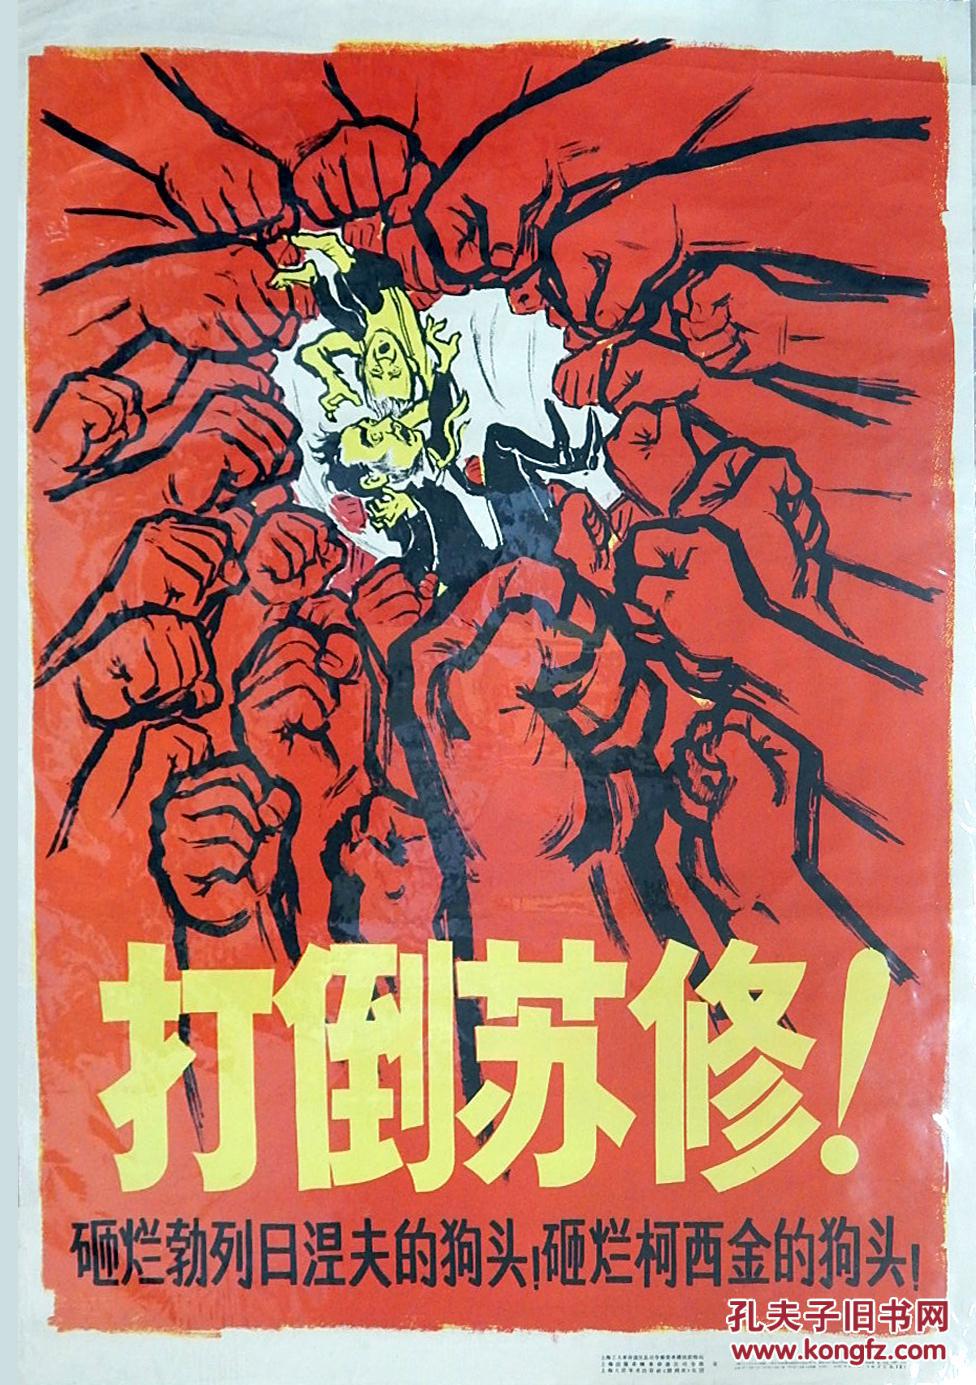 苏修帝国主义图片